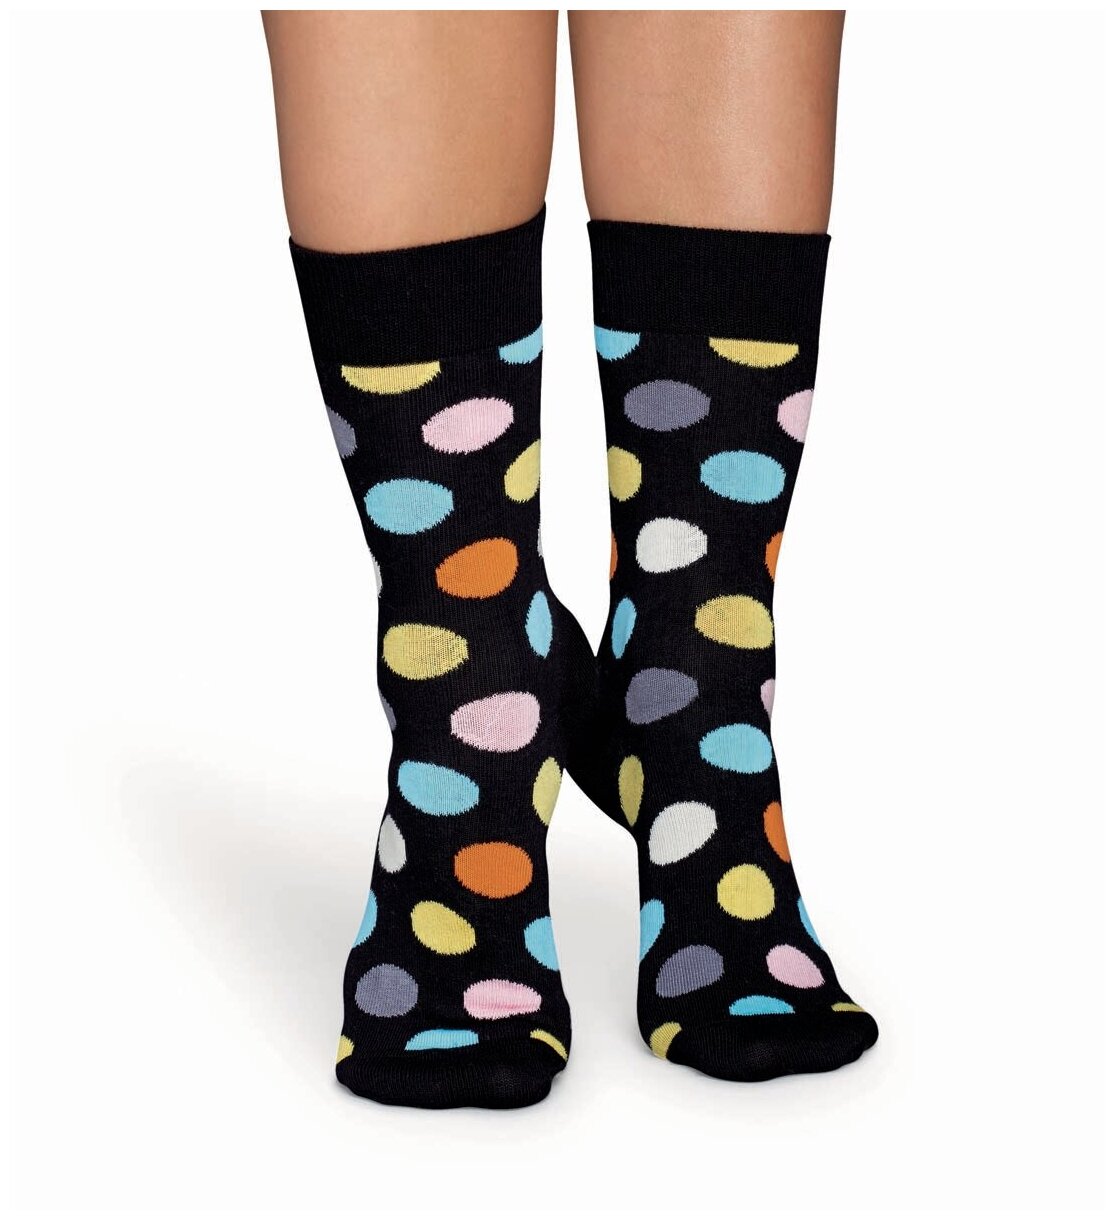 Носки Happy Socks